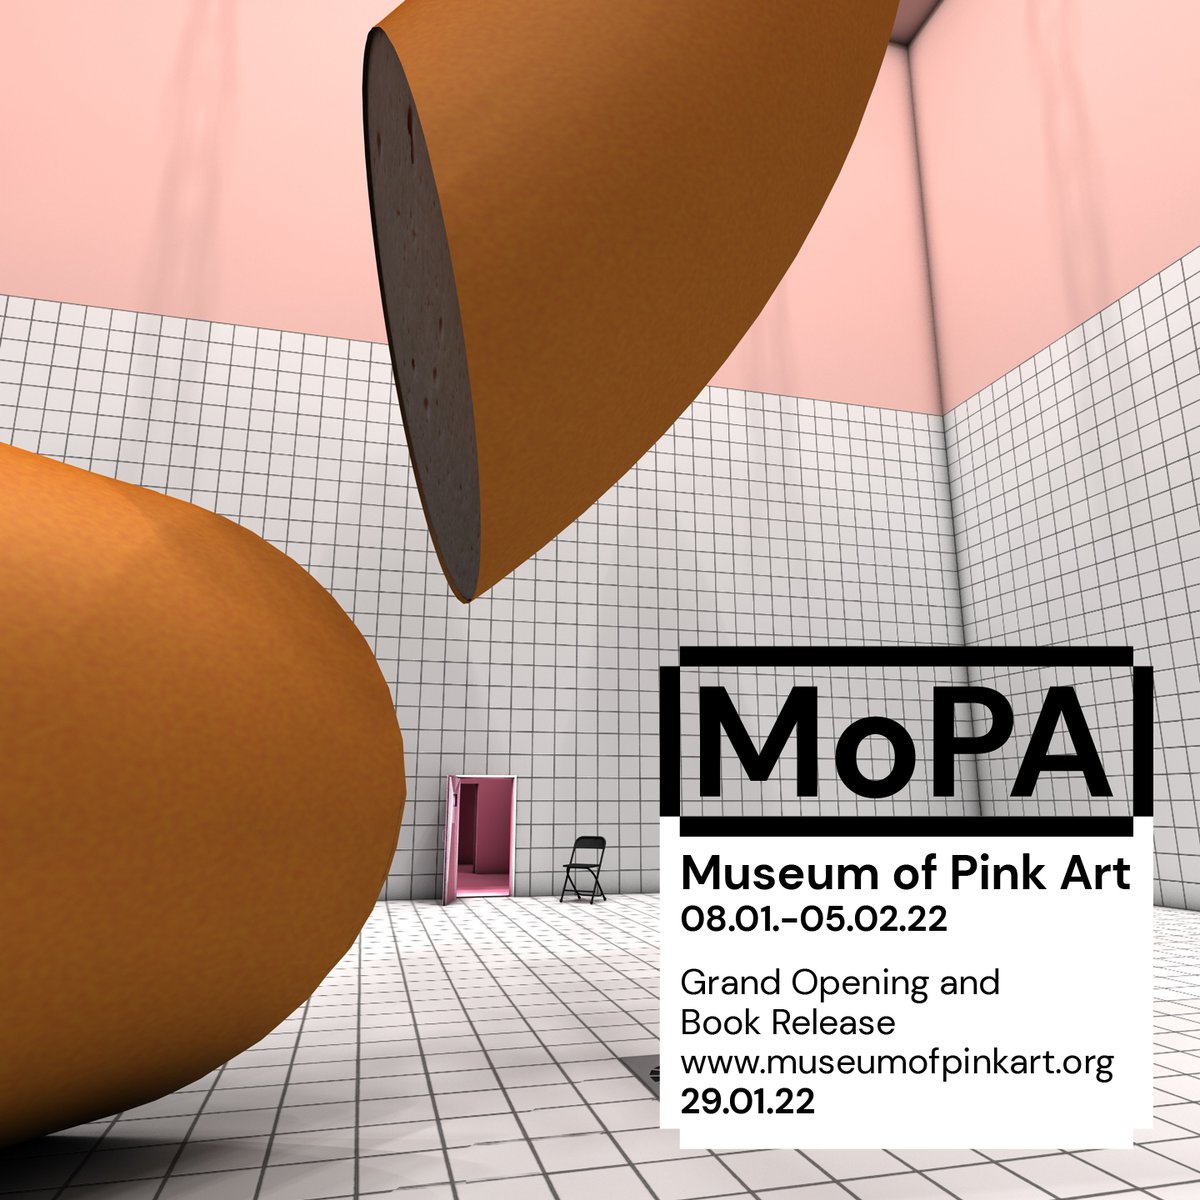 MoPA - Museum of Pink Art